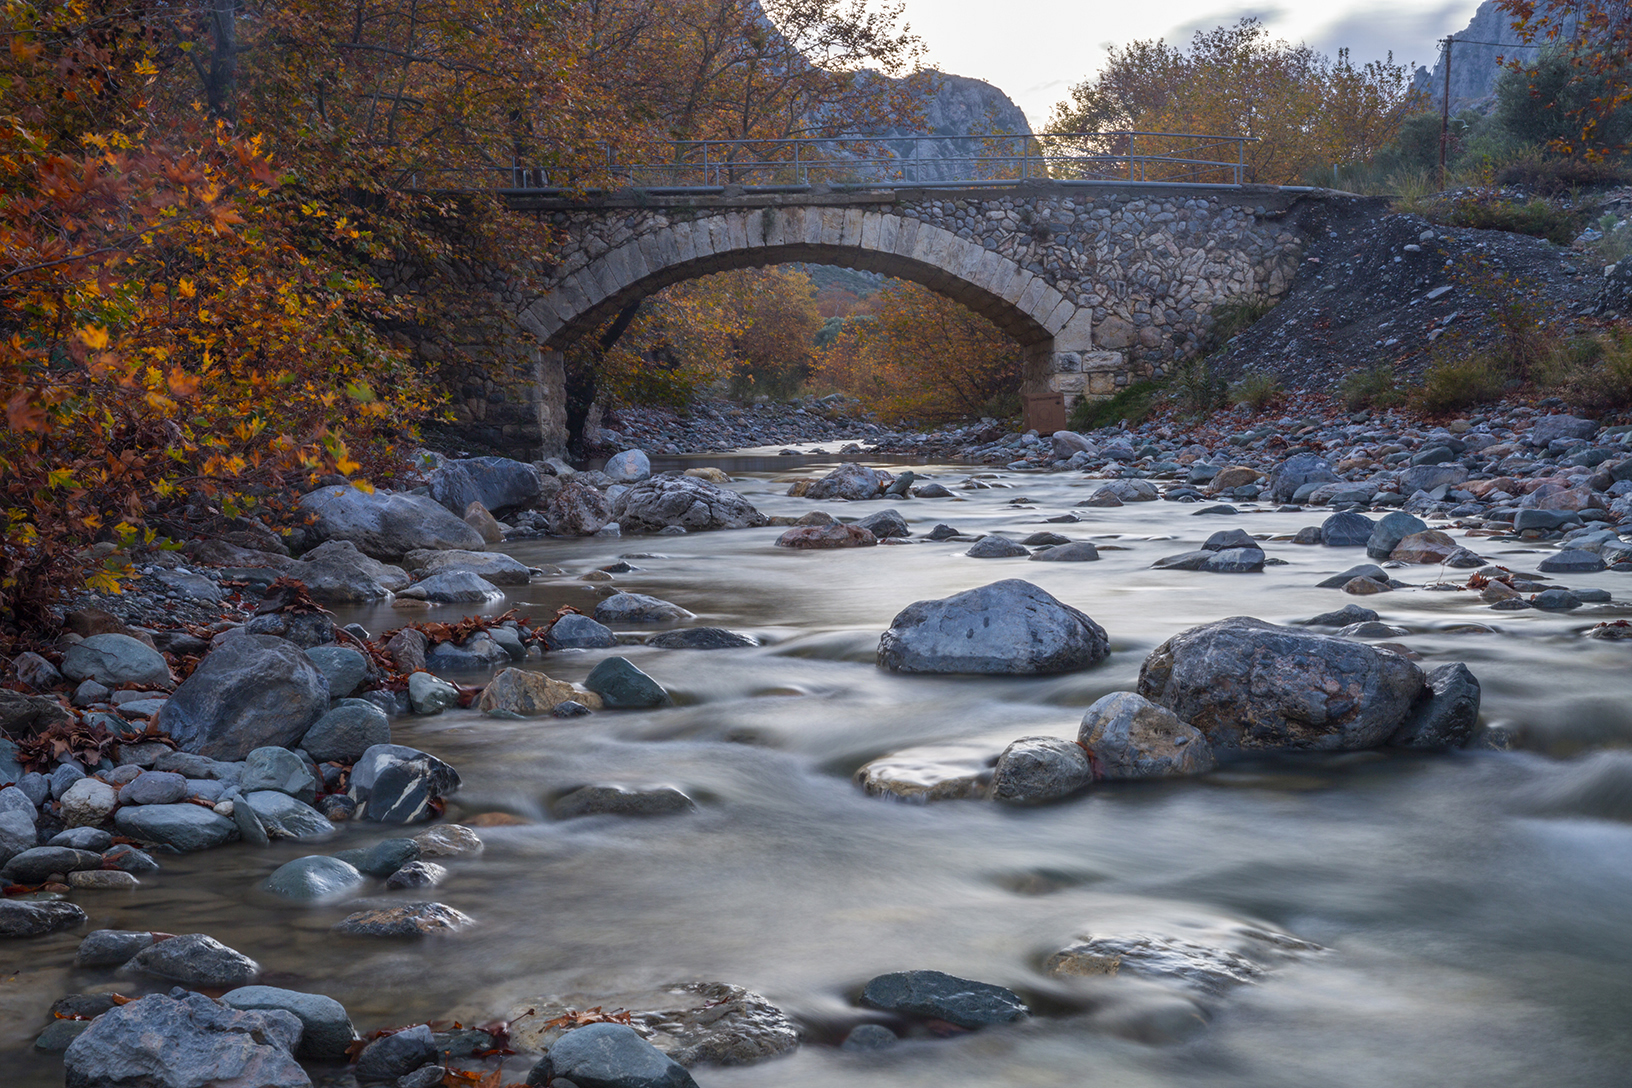 Πέτρινο γεφύρι στον Μανικιάτη, χωριό Βρύση. Φωτογραφία: ©Βασίλης Συκάς, για τον Δήμο Κύμης-Αλιβερίου